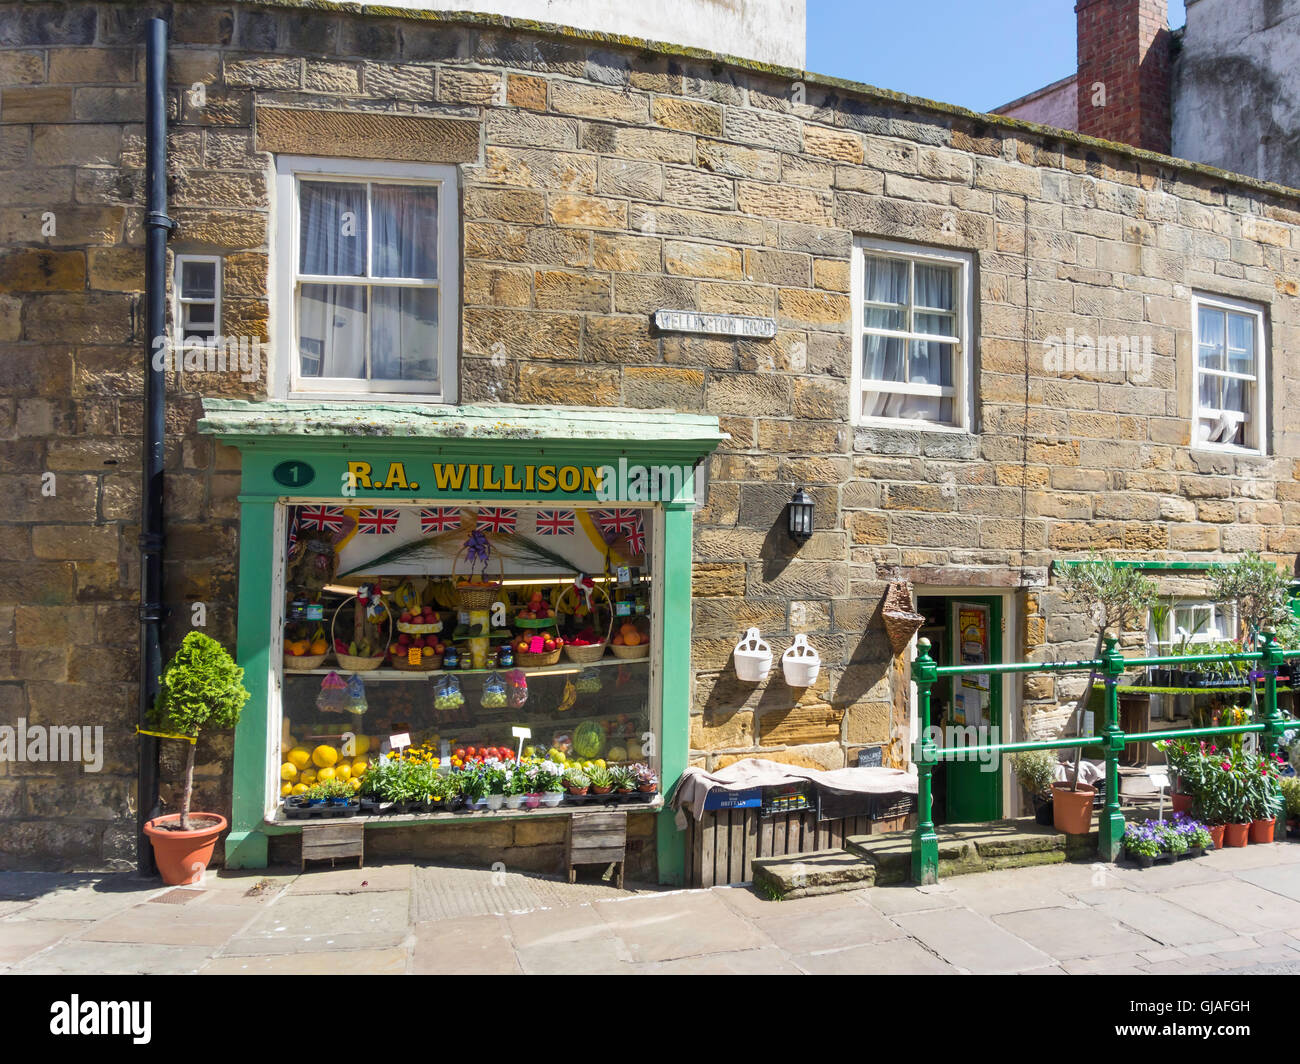 Une petite boutique de fleurs et de fruits, fondée en 1800, dans la région de Whitby, North Yorkshire Angleterre UK Banque D'Images